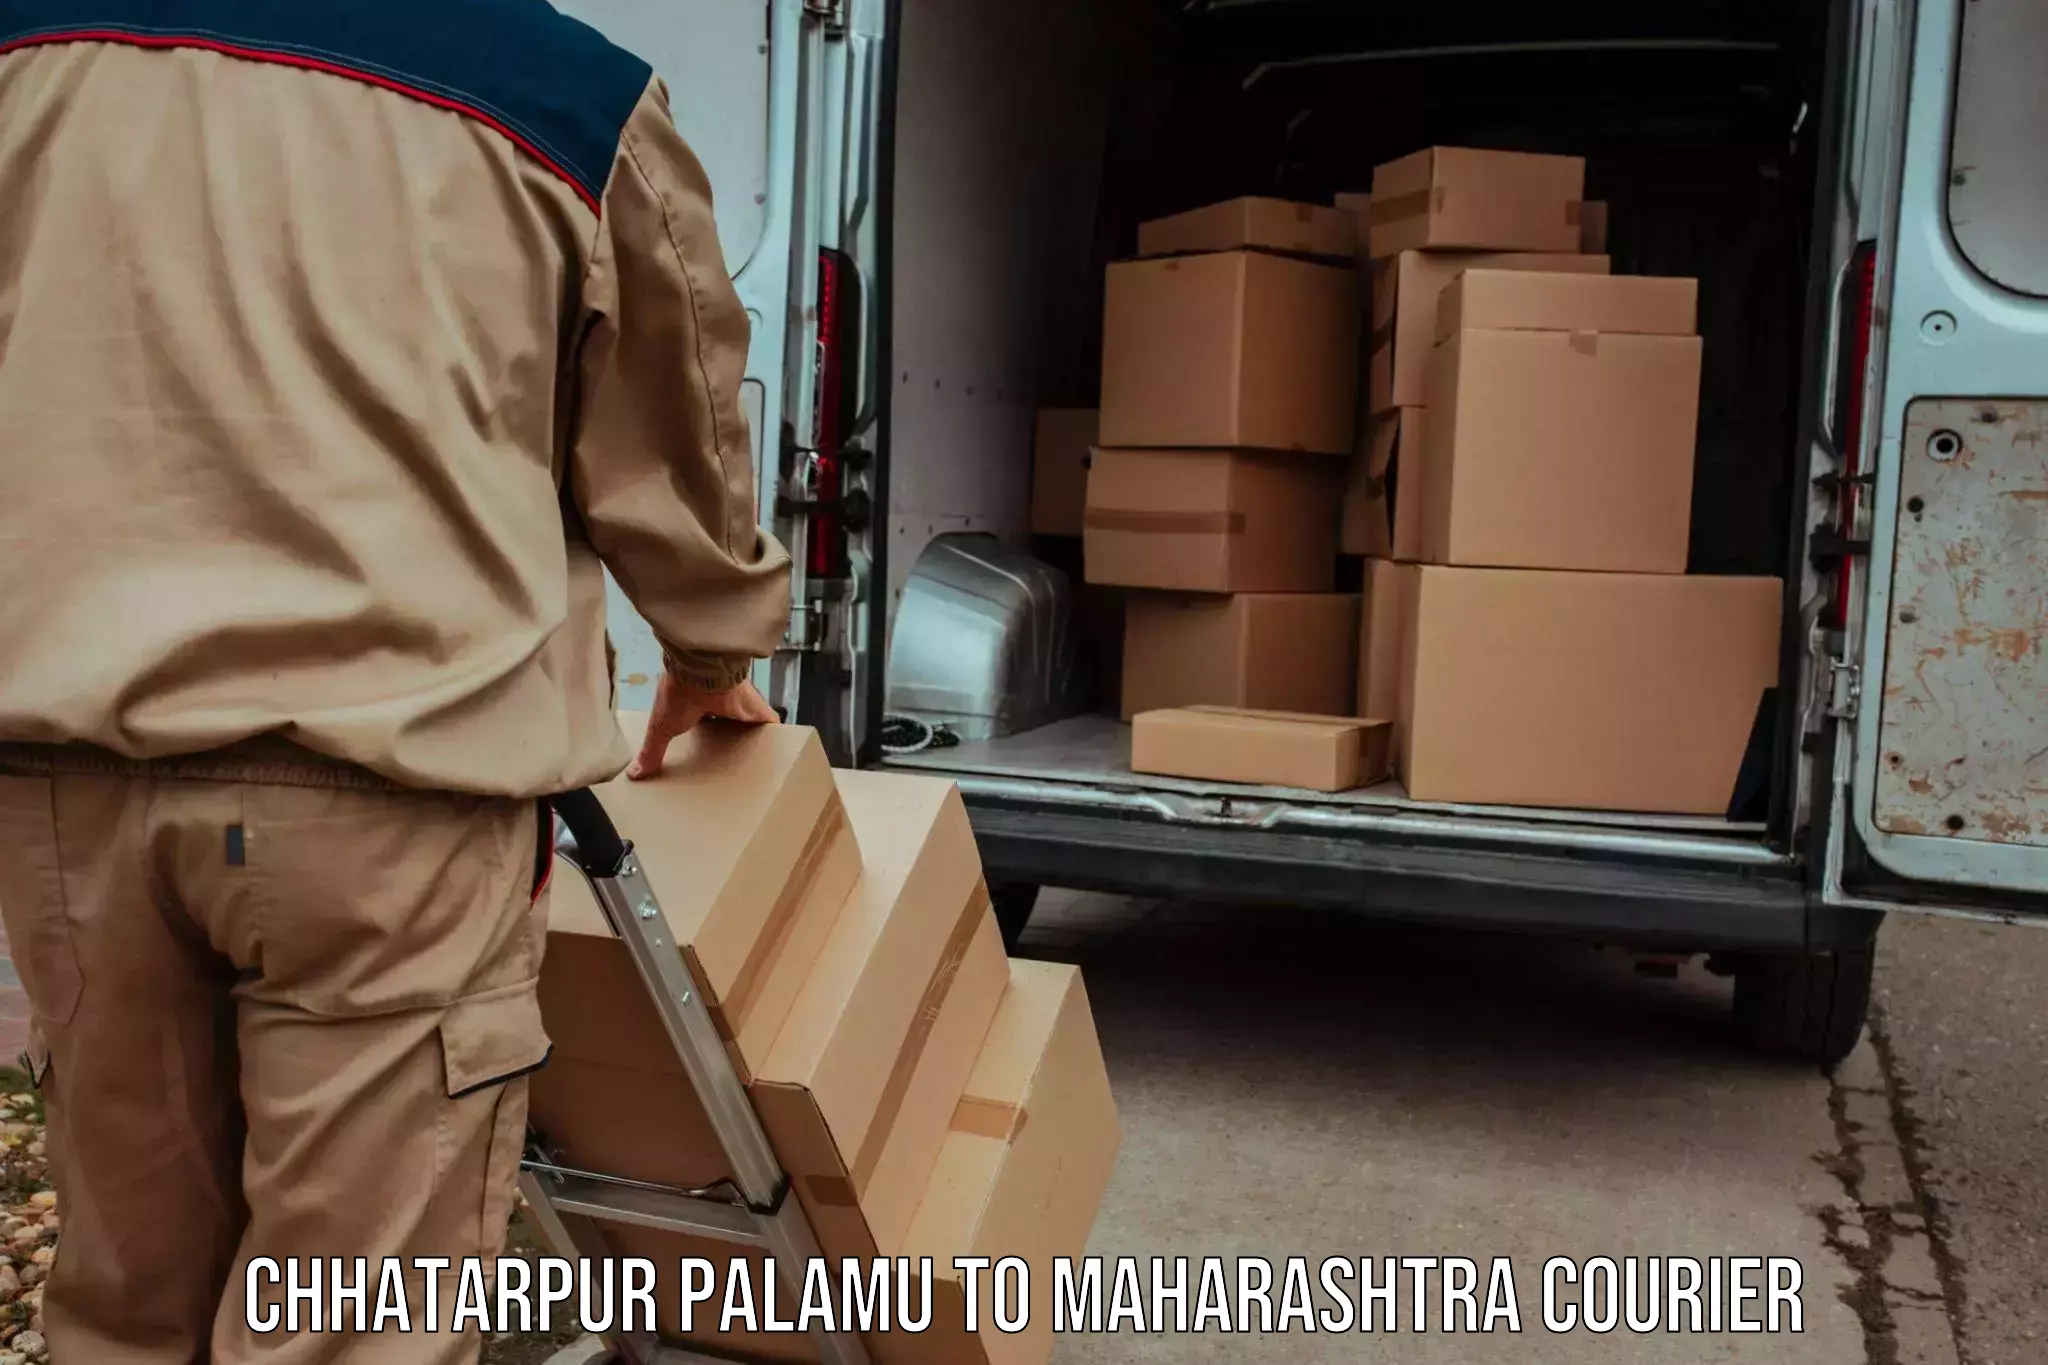 Special handling courier Chhatarpur Palamu to Ahmednagar